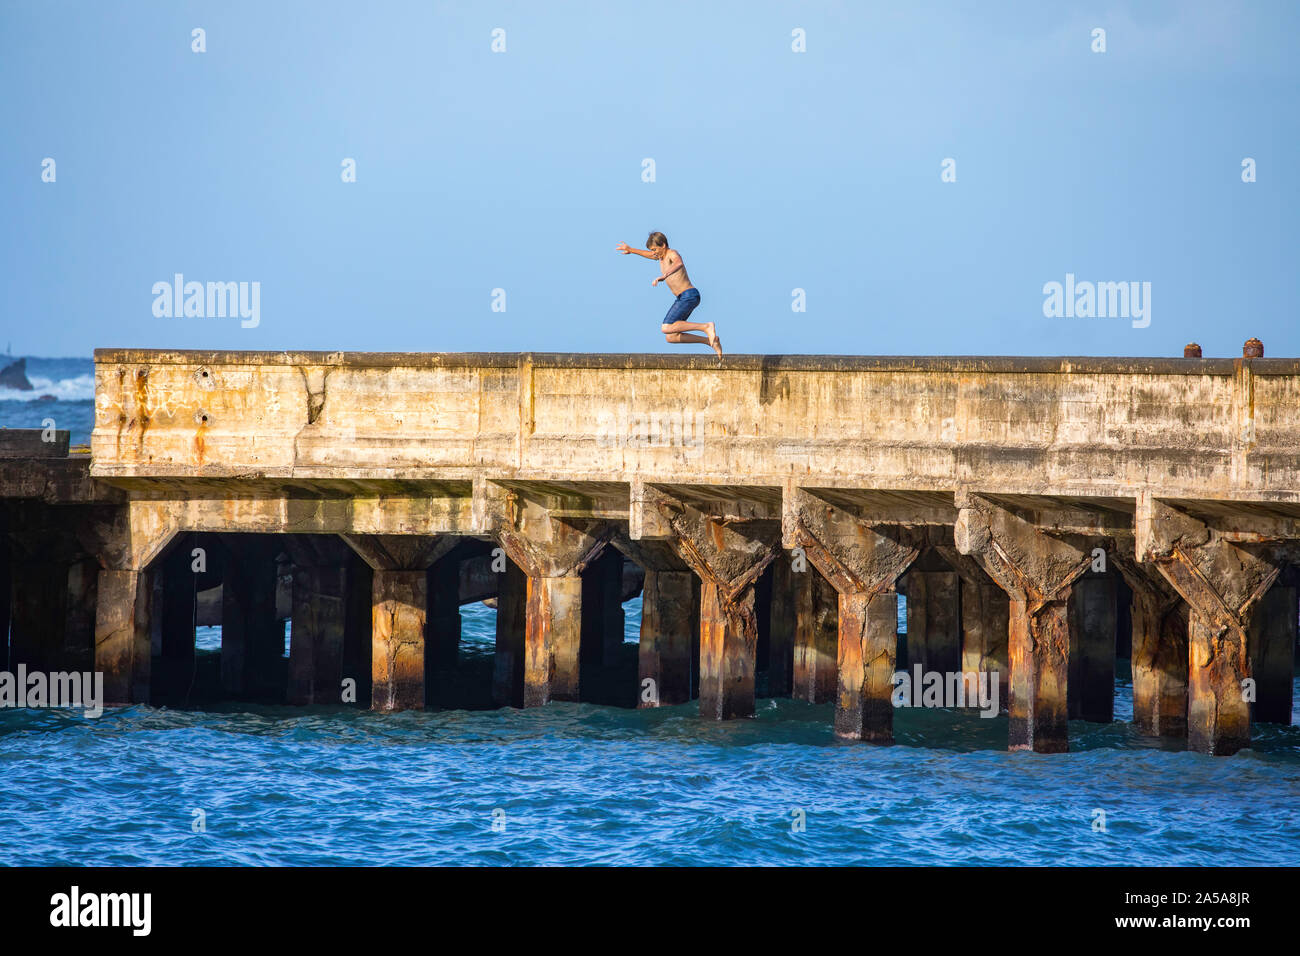 Ein junger Mann, MR, springt von der Werft in Hana Bay, Maui, Hawaii. Stockfoto